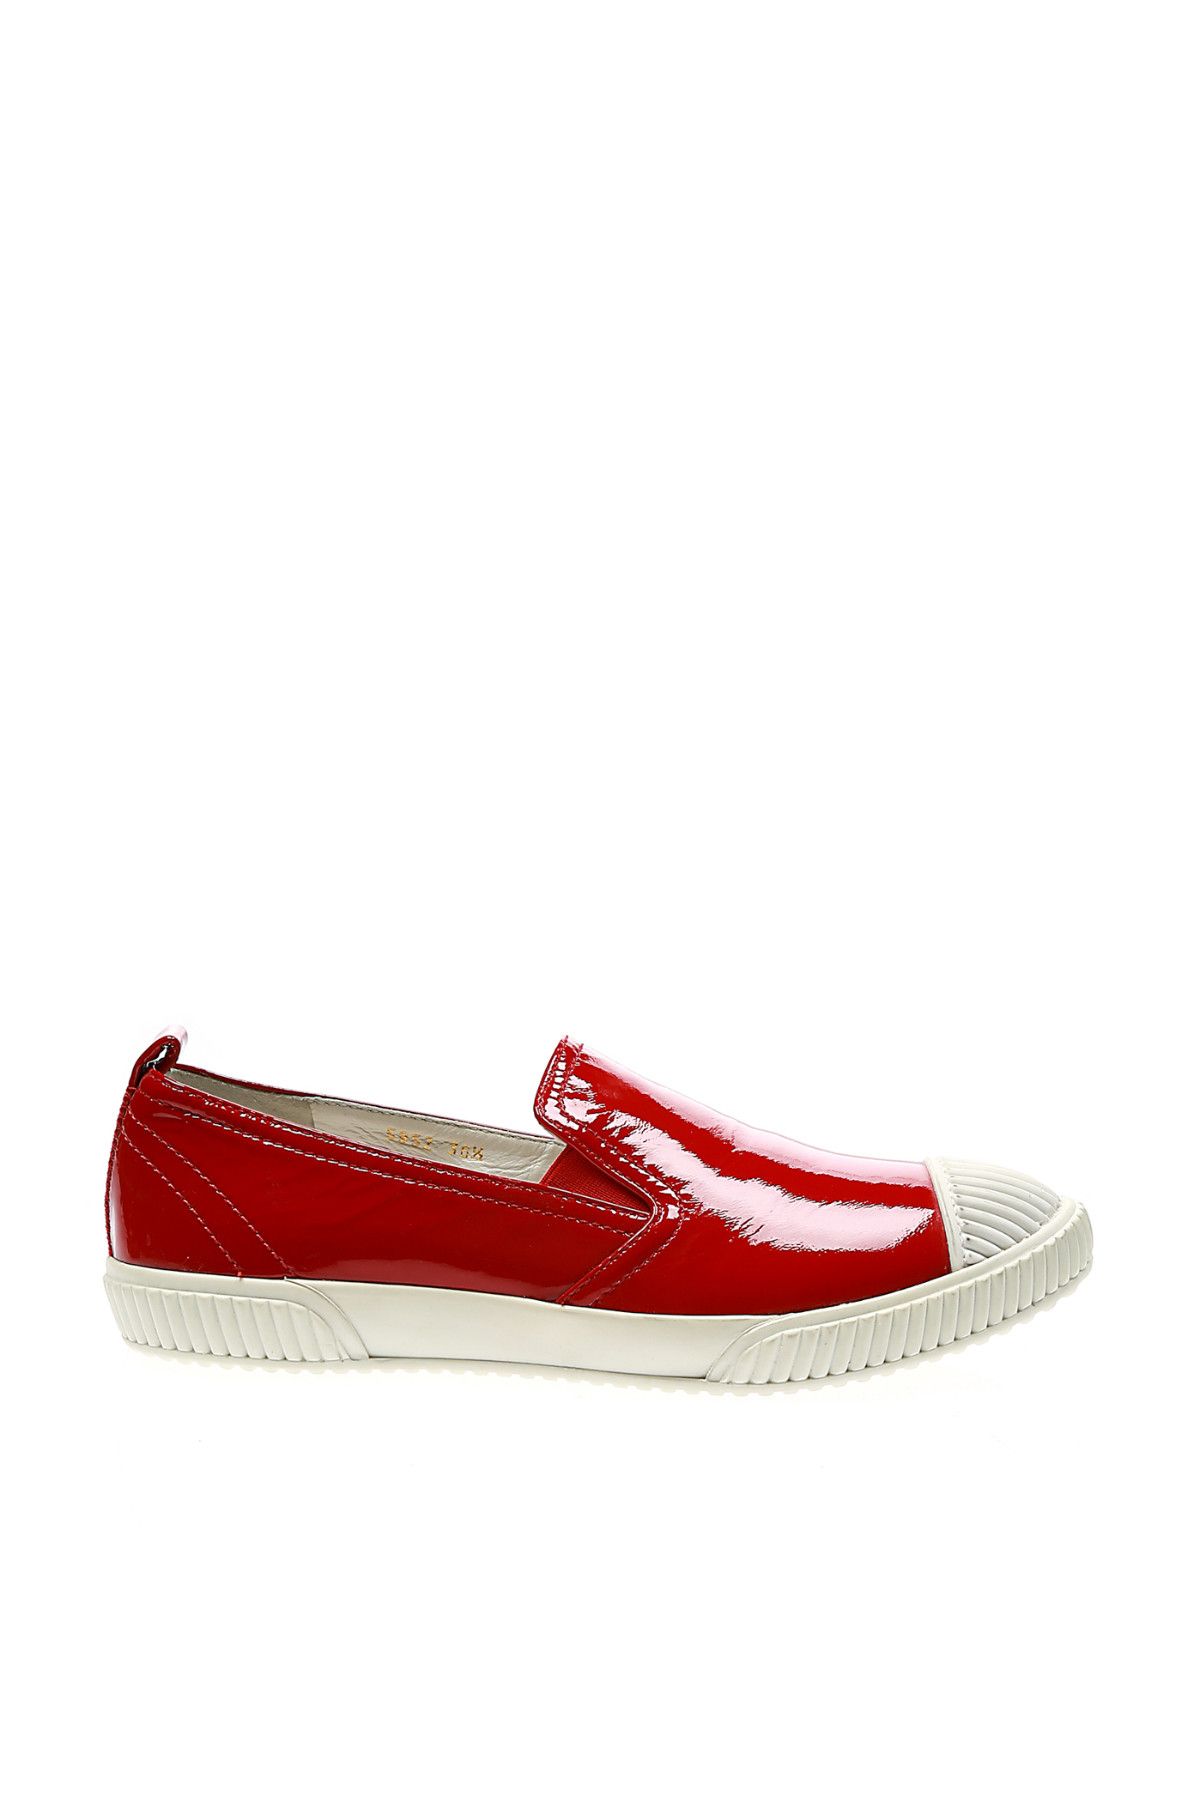 Prada Kadın Kırmızı Günlük Ayakkabı 5952